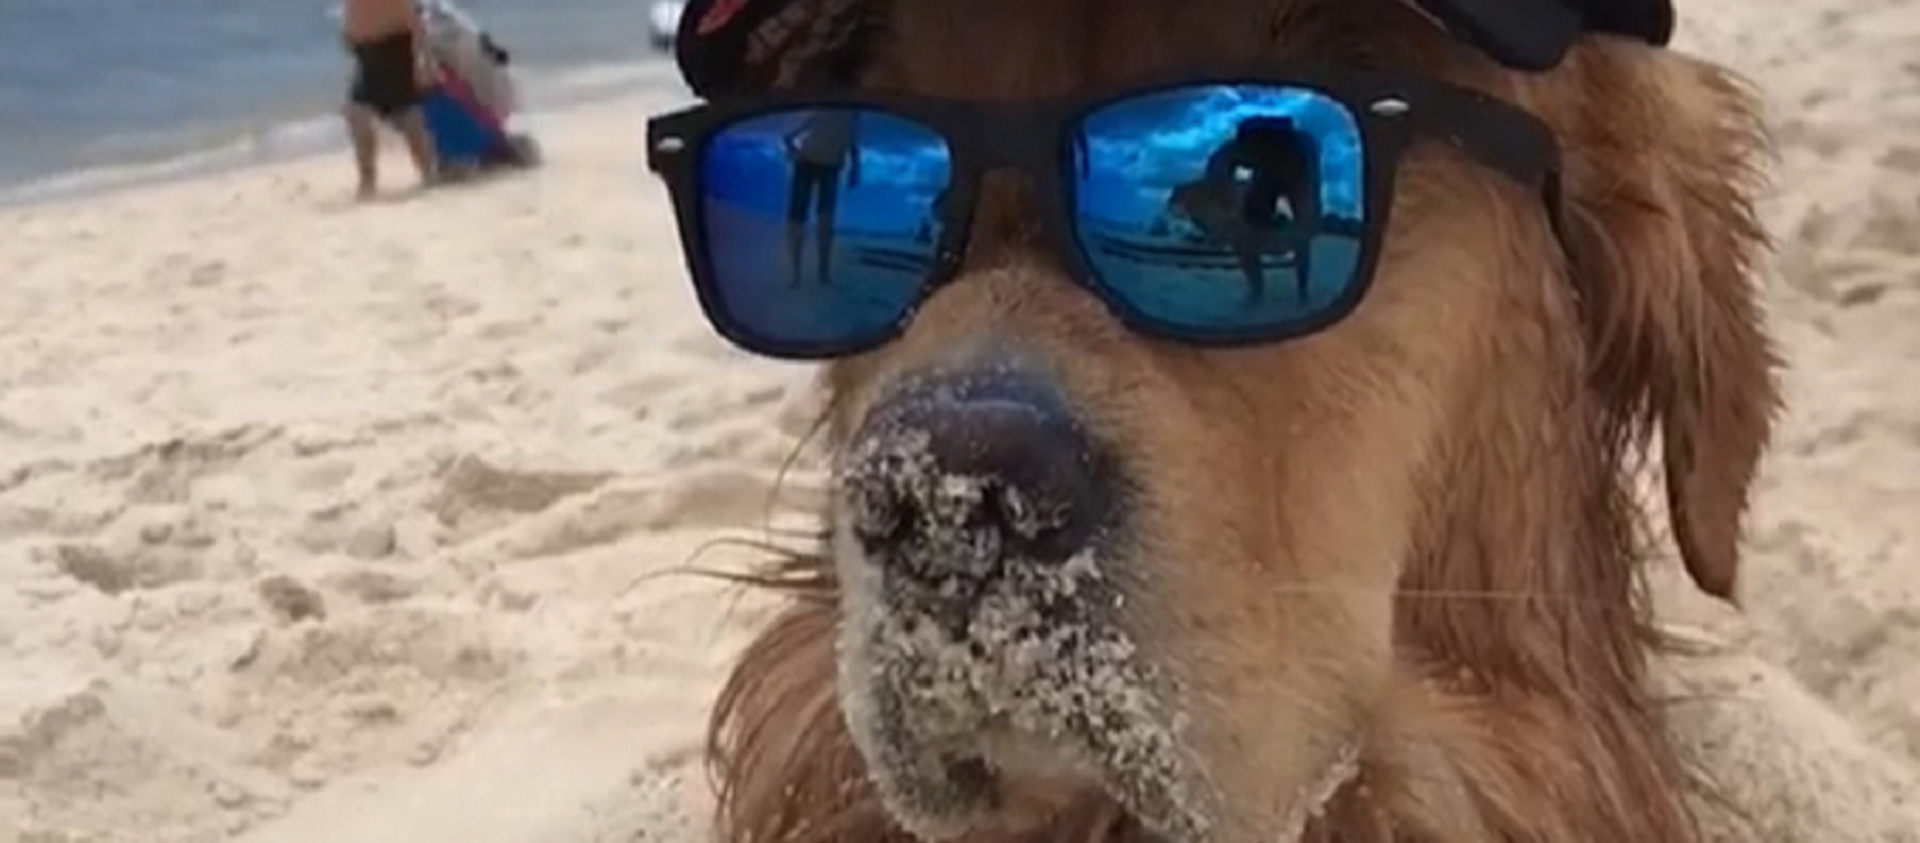 Los dueños de un perro de la raza golden retriever decidieron enterrar parcialmente a su mascota en la arena de la playa para ver cómo reaccionaba el animal - Sputnik Mundo, 1920, 08.01.2020